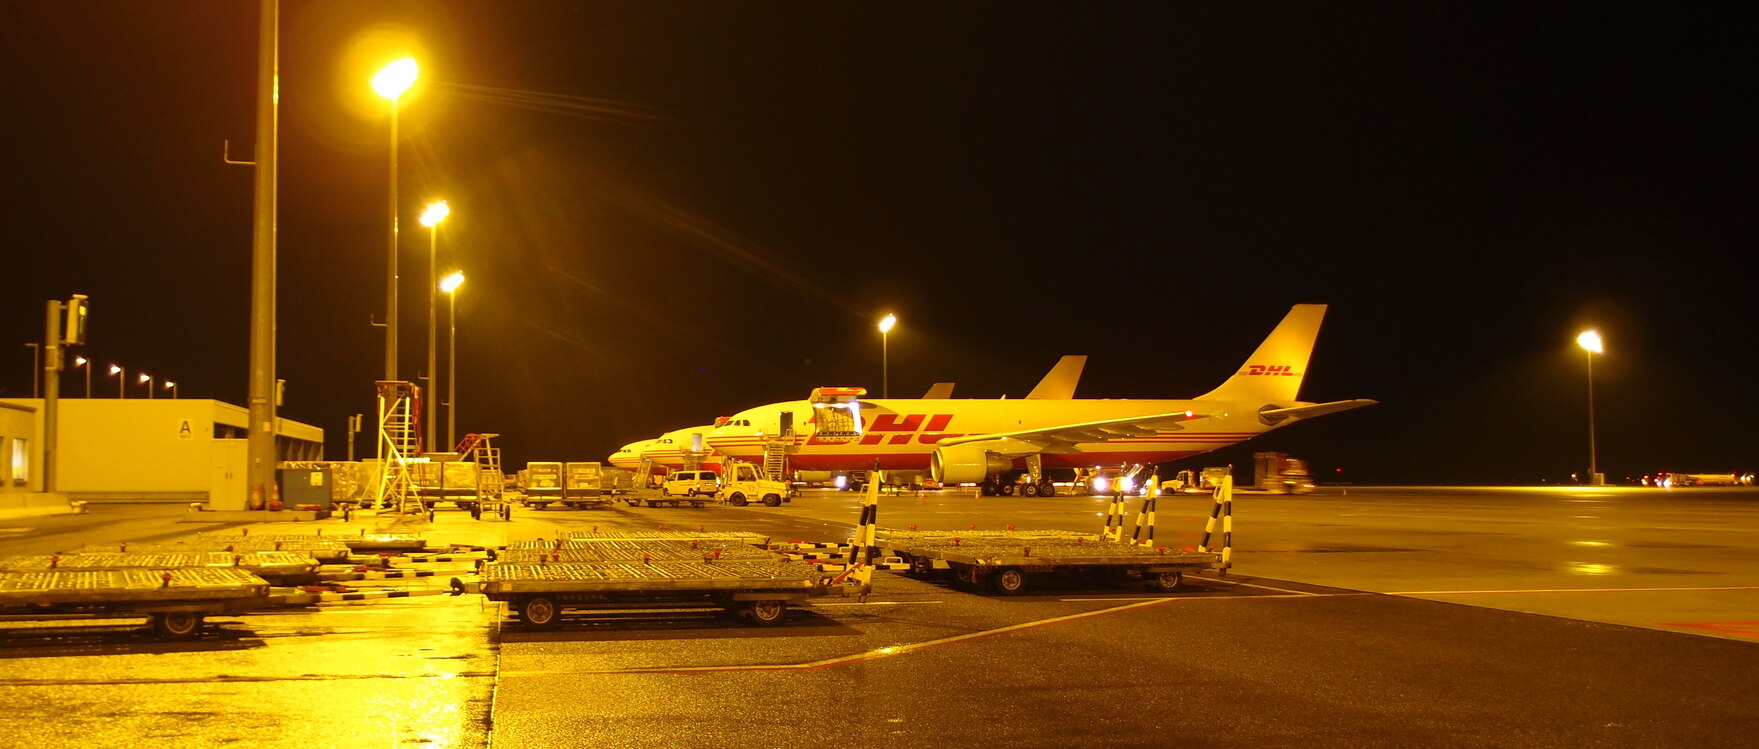 Drei Maschinen mit der Aufschrift "DHL" auf dem Flughafen.